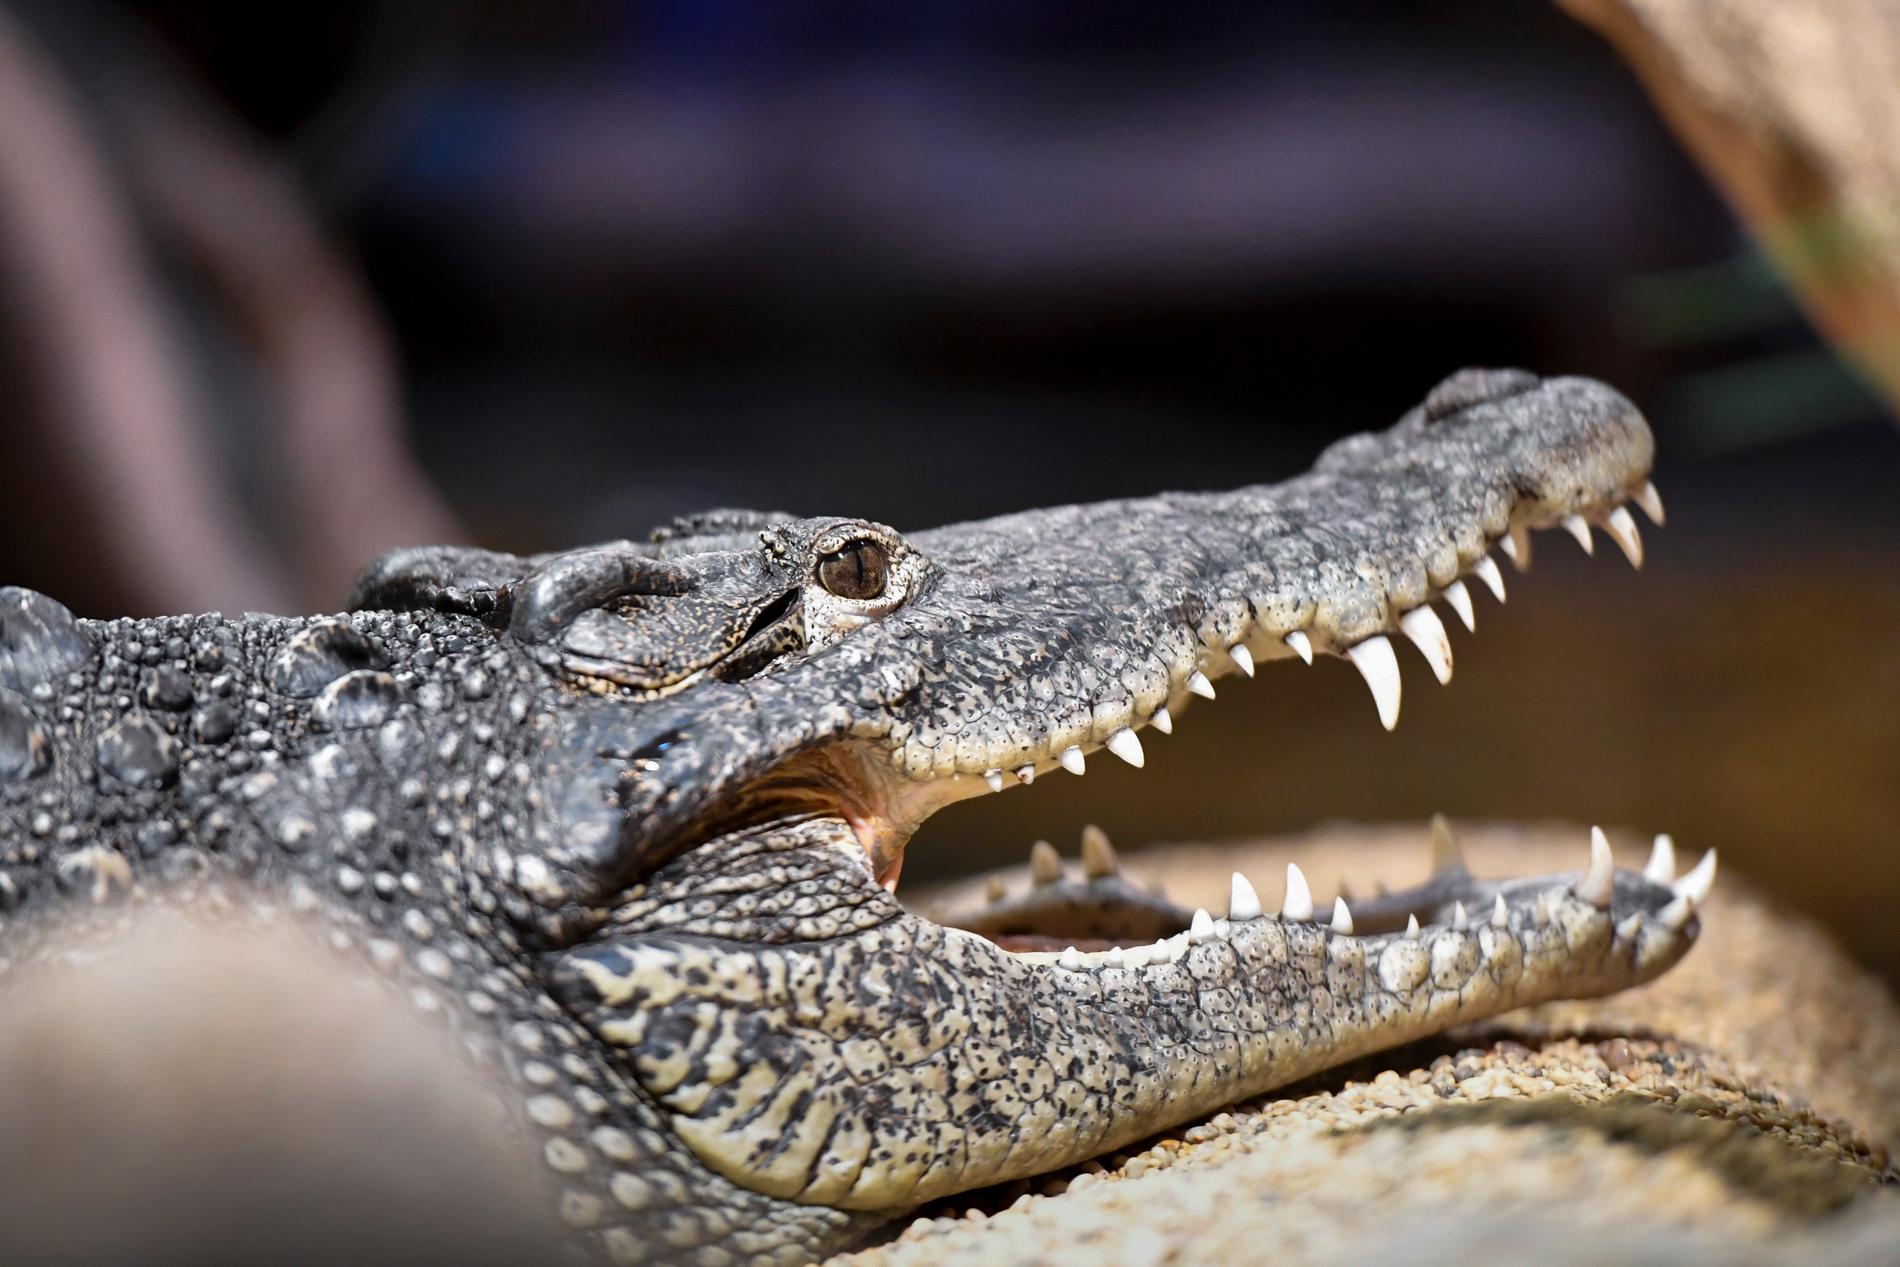 En av Skansenakvariets två Kubakrokodiler. Arten är en av de mest aggressiva krokodilarterna.